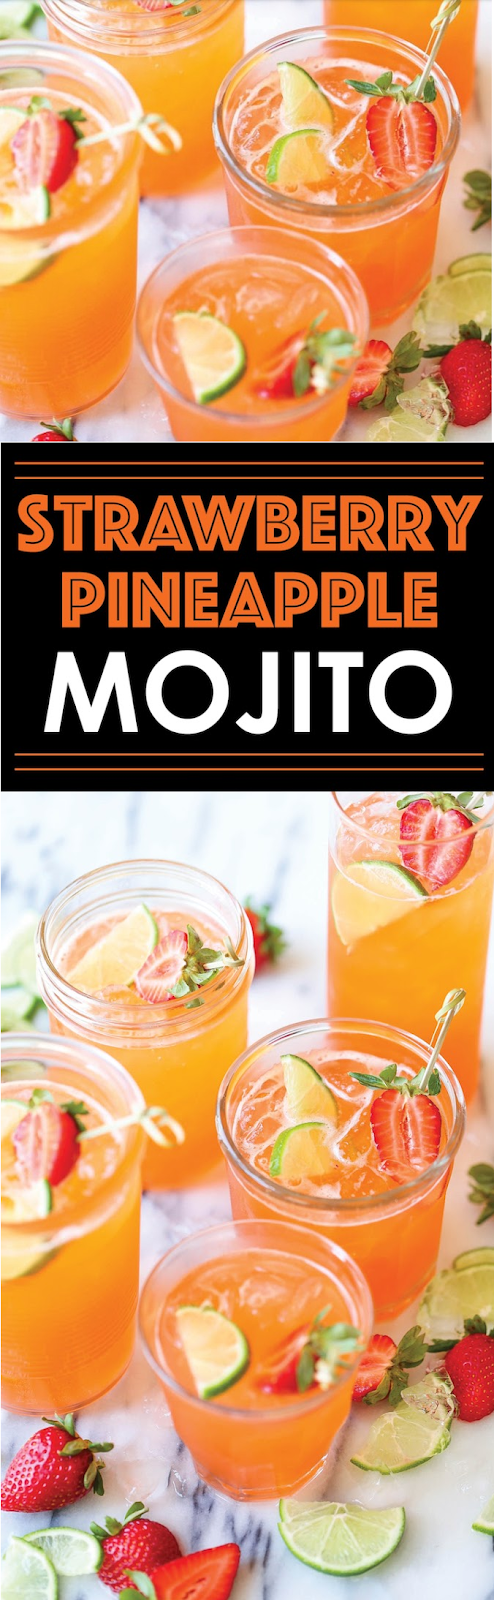 Strawberry Pineapple Mojito